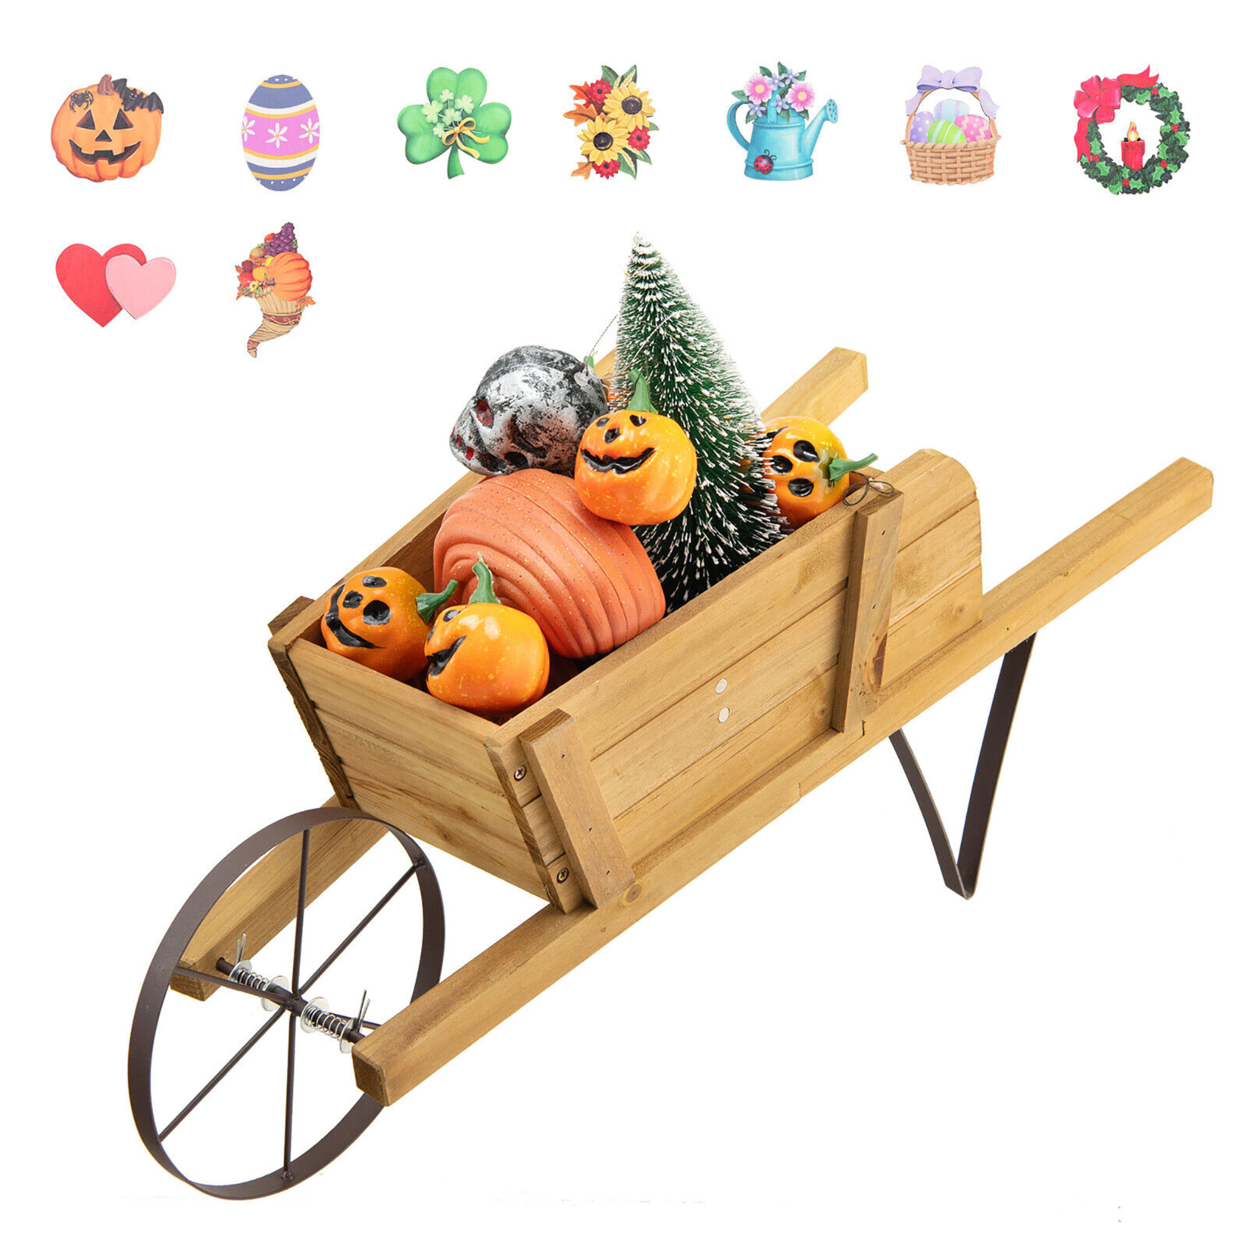 Wooden Wagon Planter Decorative Indoor/ Outdoor Rustic Flower Cart W/ Wheel - Walnut